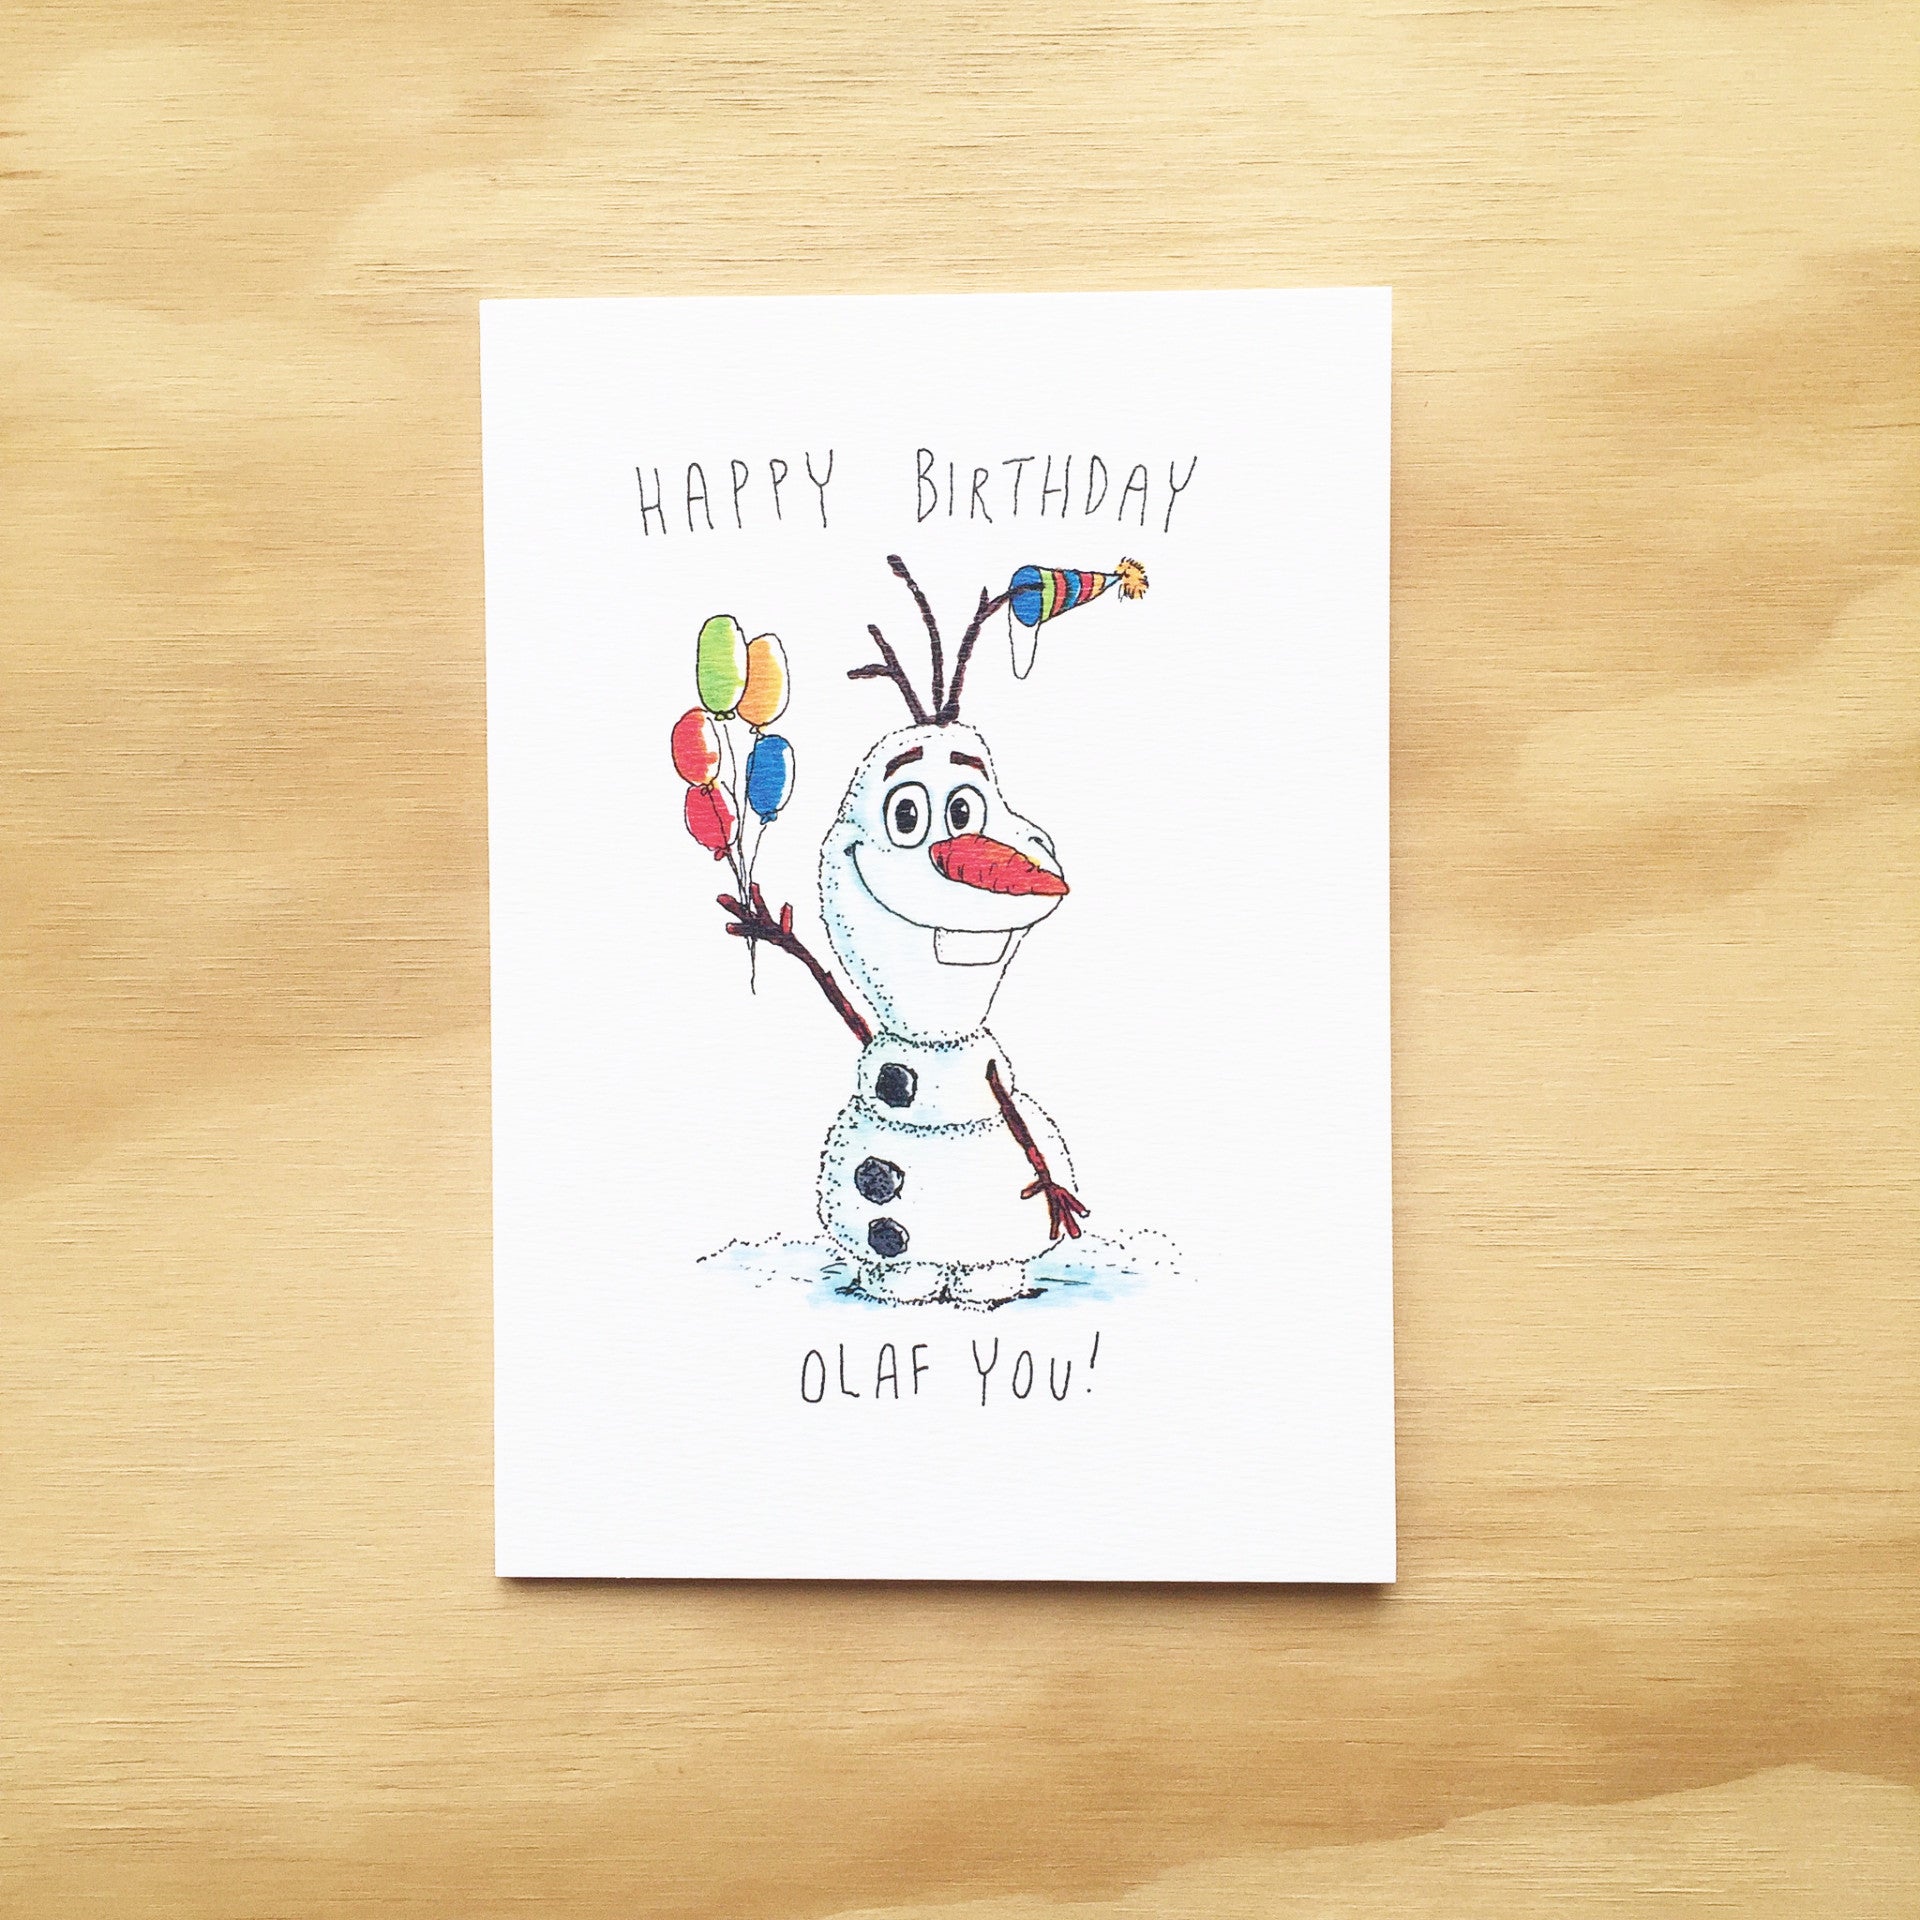 Happy Birthday, Olaf You - Well Drawn